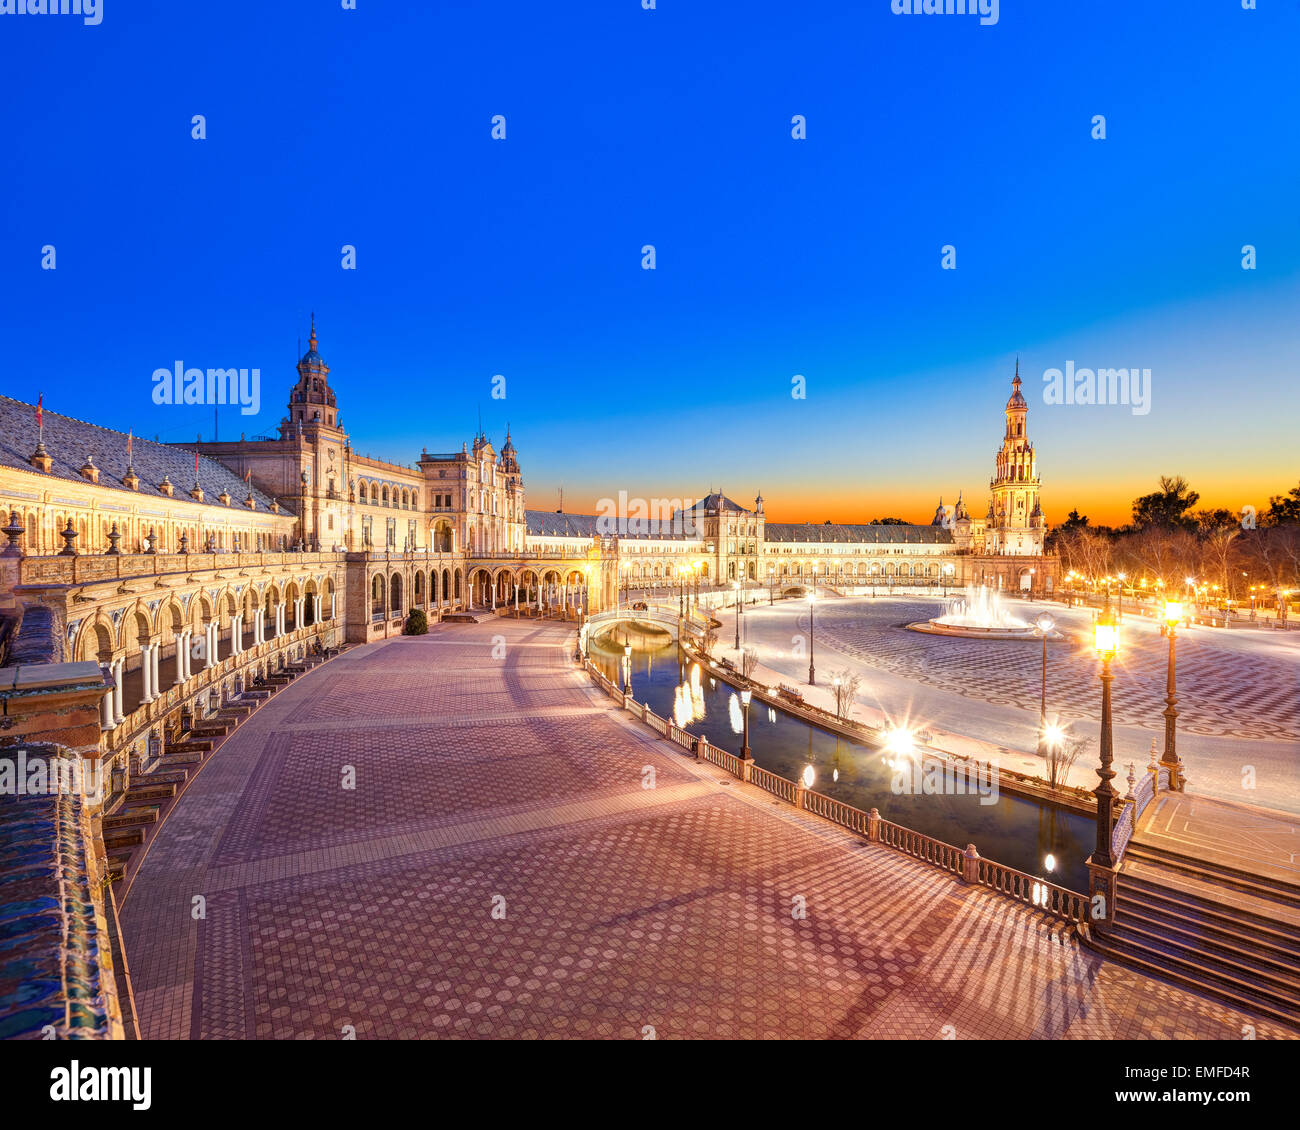 Plaza de Espana Sevilla, Sevilla, Spanien bei Sonnenuntergang. Malerischen Überblick über den Platz in Richtung Südturm des Hauptgebäudes. Stockfoto